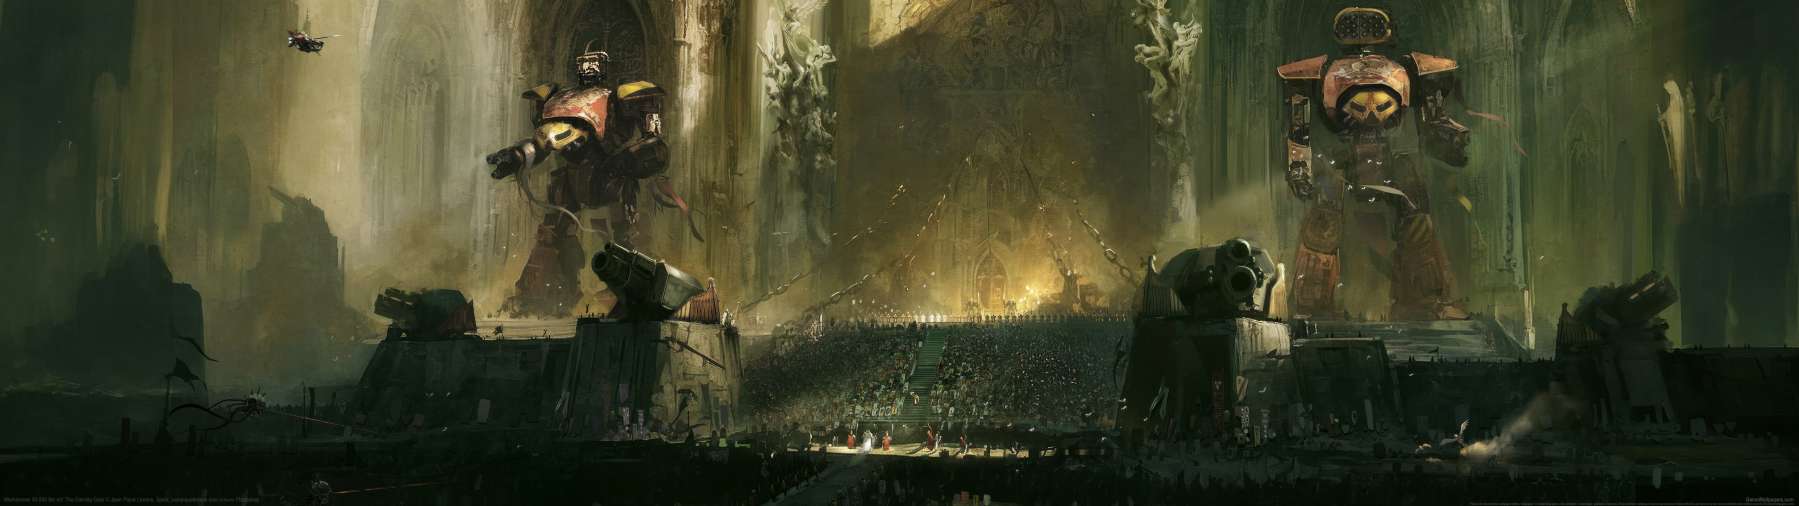 Warhammer 40,000 fan art wallpaper or background